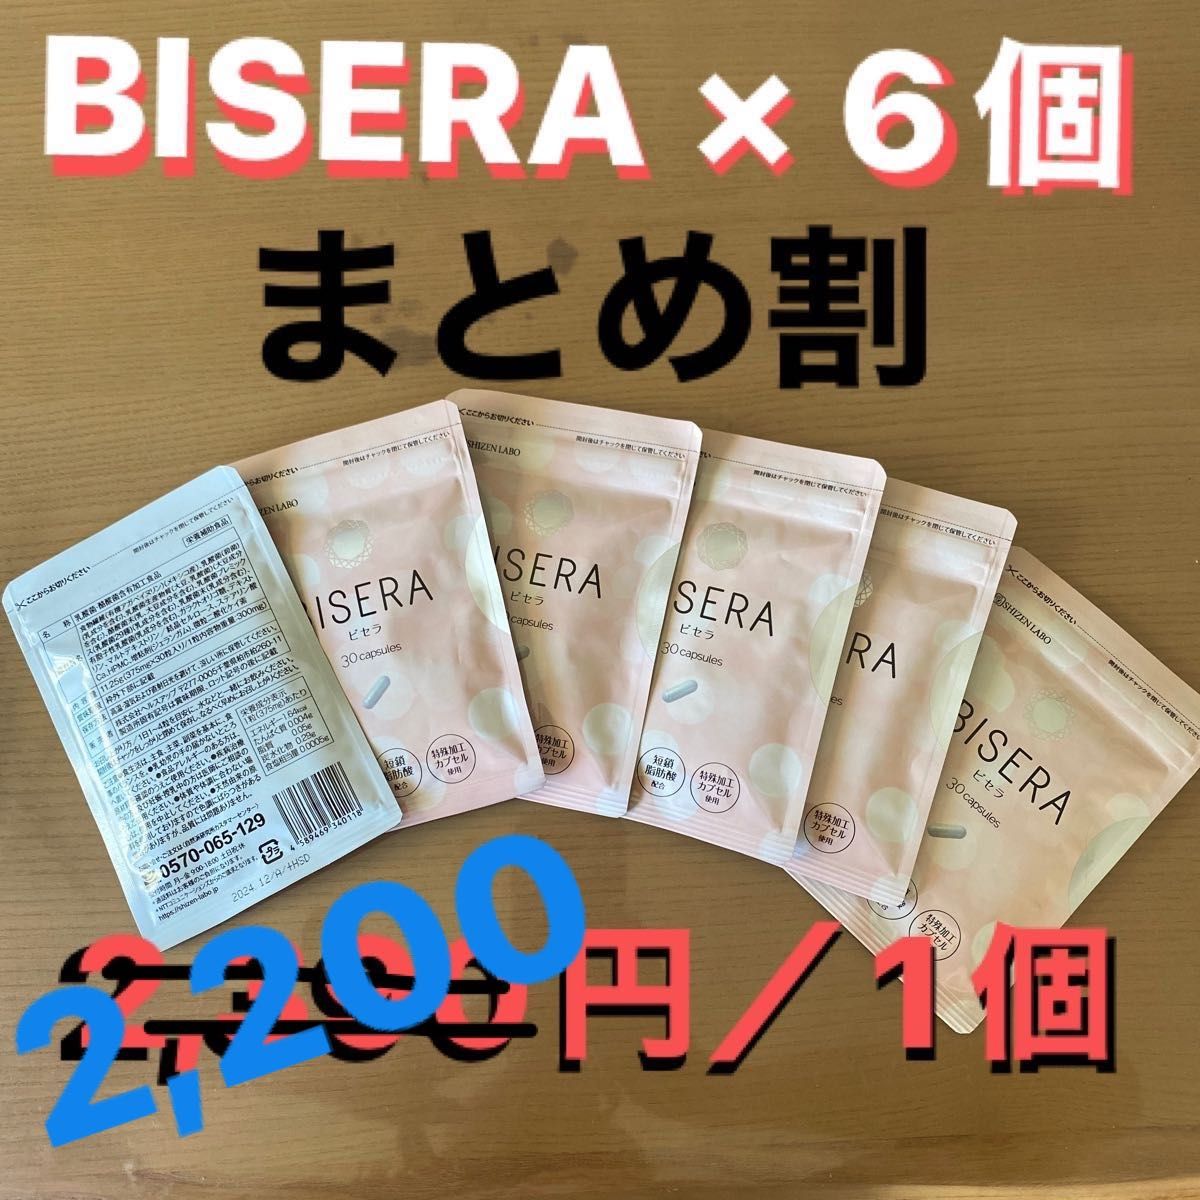 【未開封/まとめ割】BISERA(ビセラ) 30カプセル × 6個